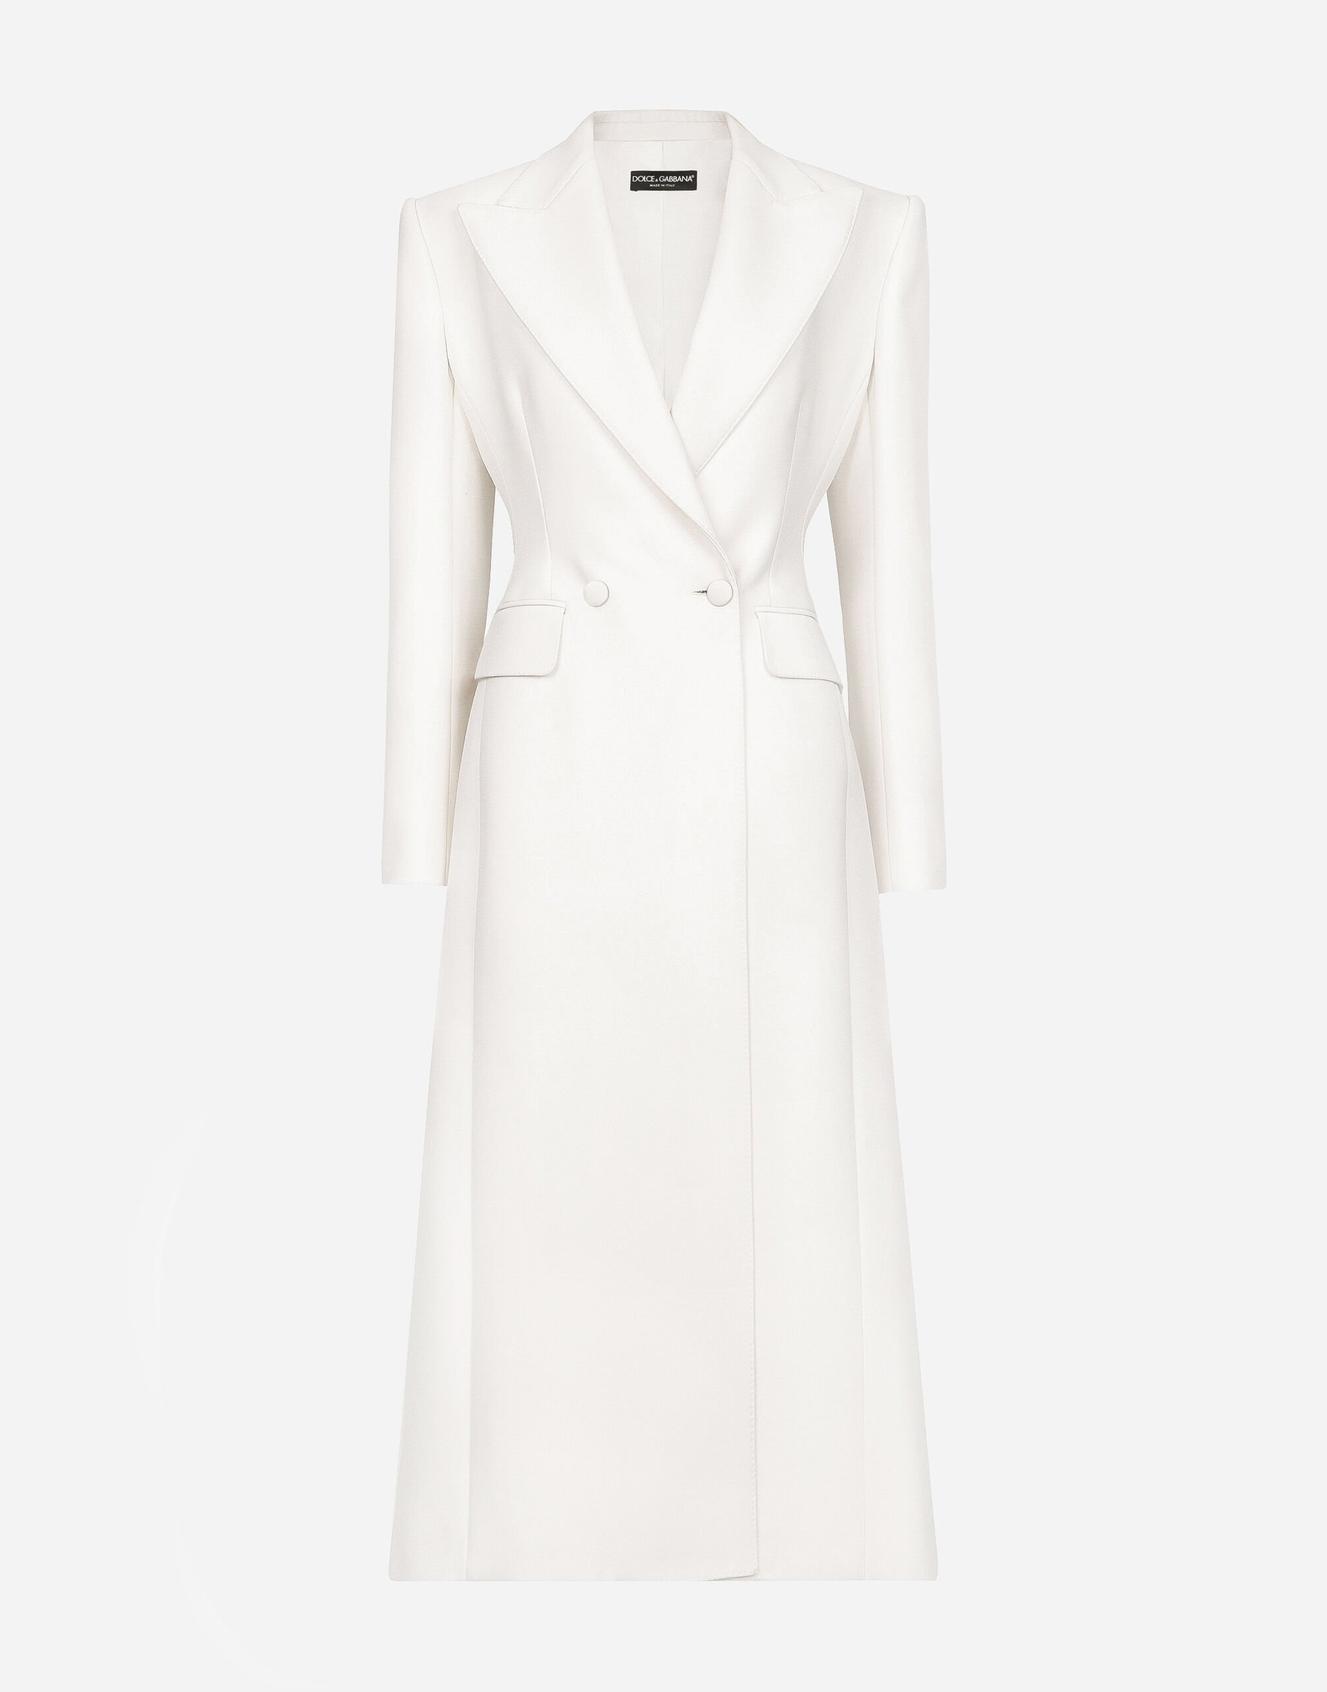 Long manteau croisé en cady de laine offre à 3450€ sur Dolce & Gabbana